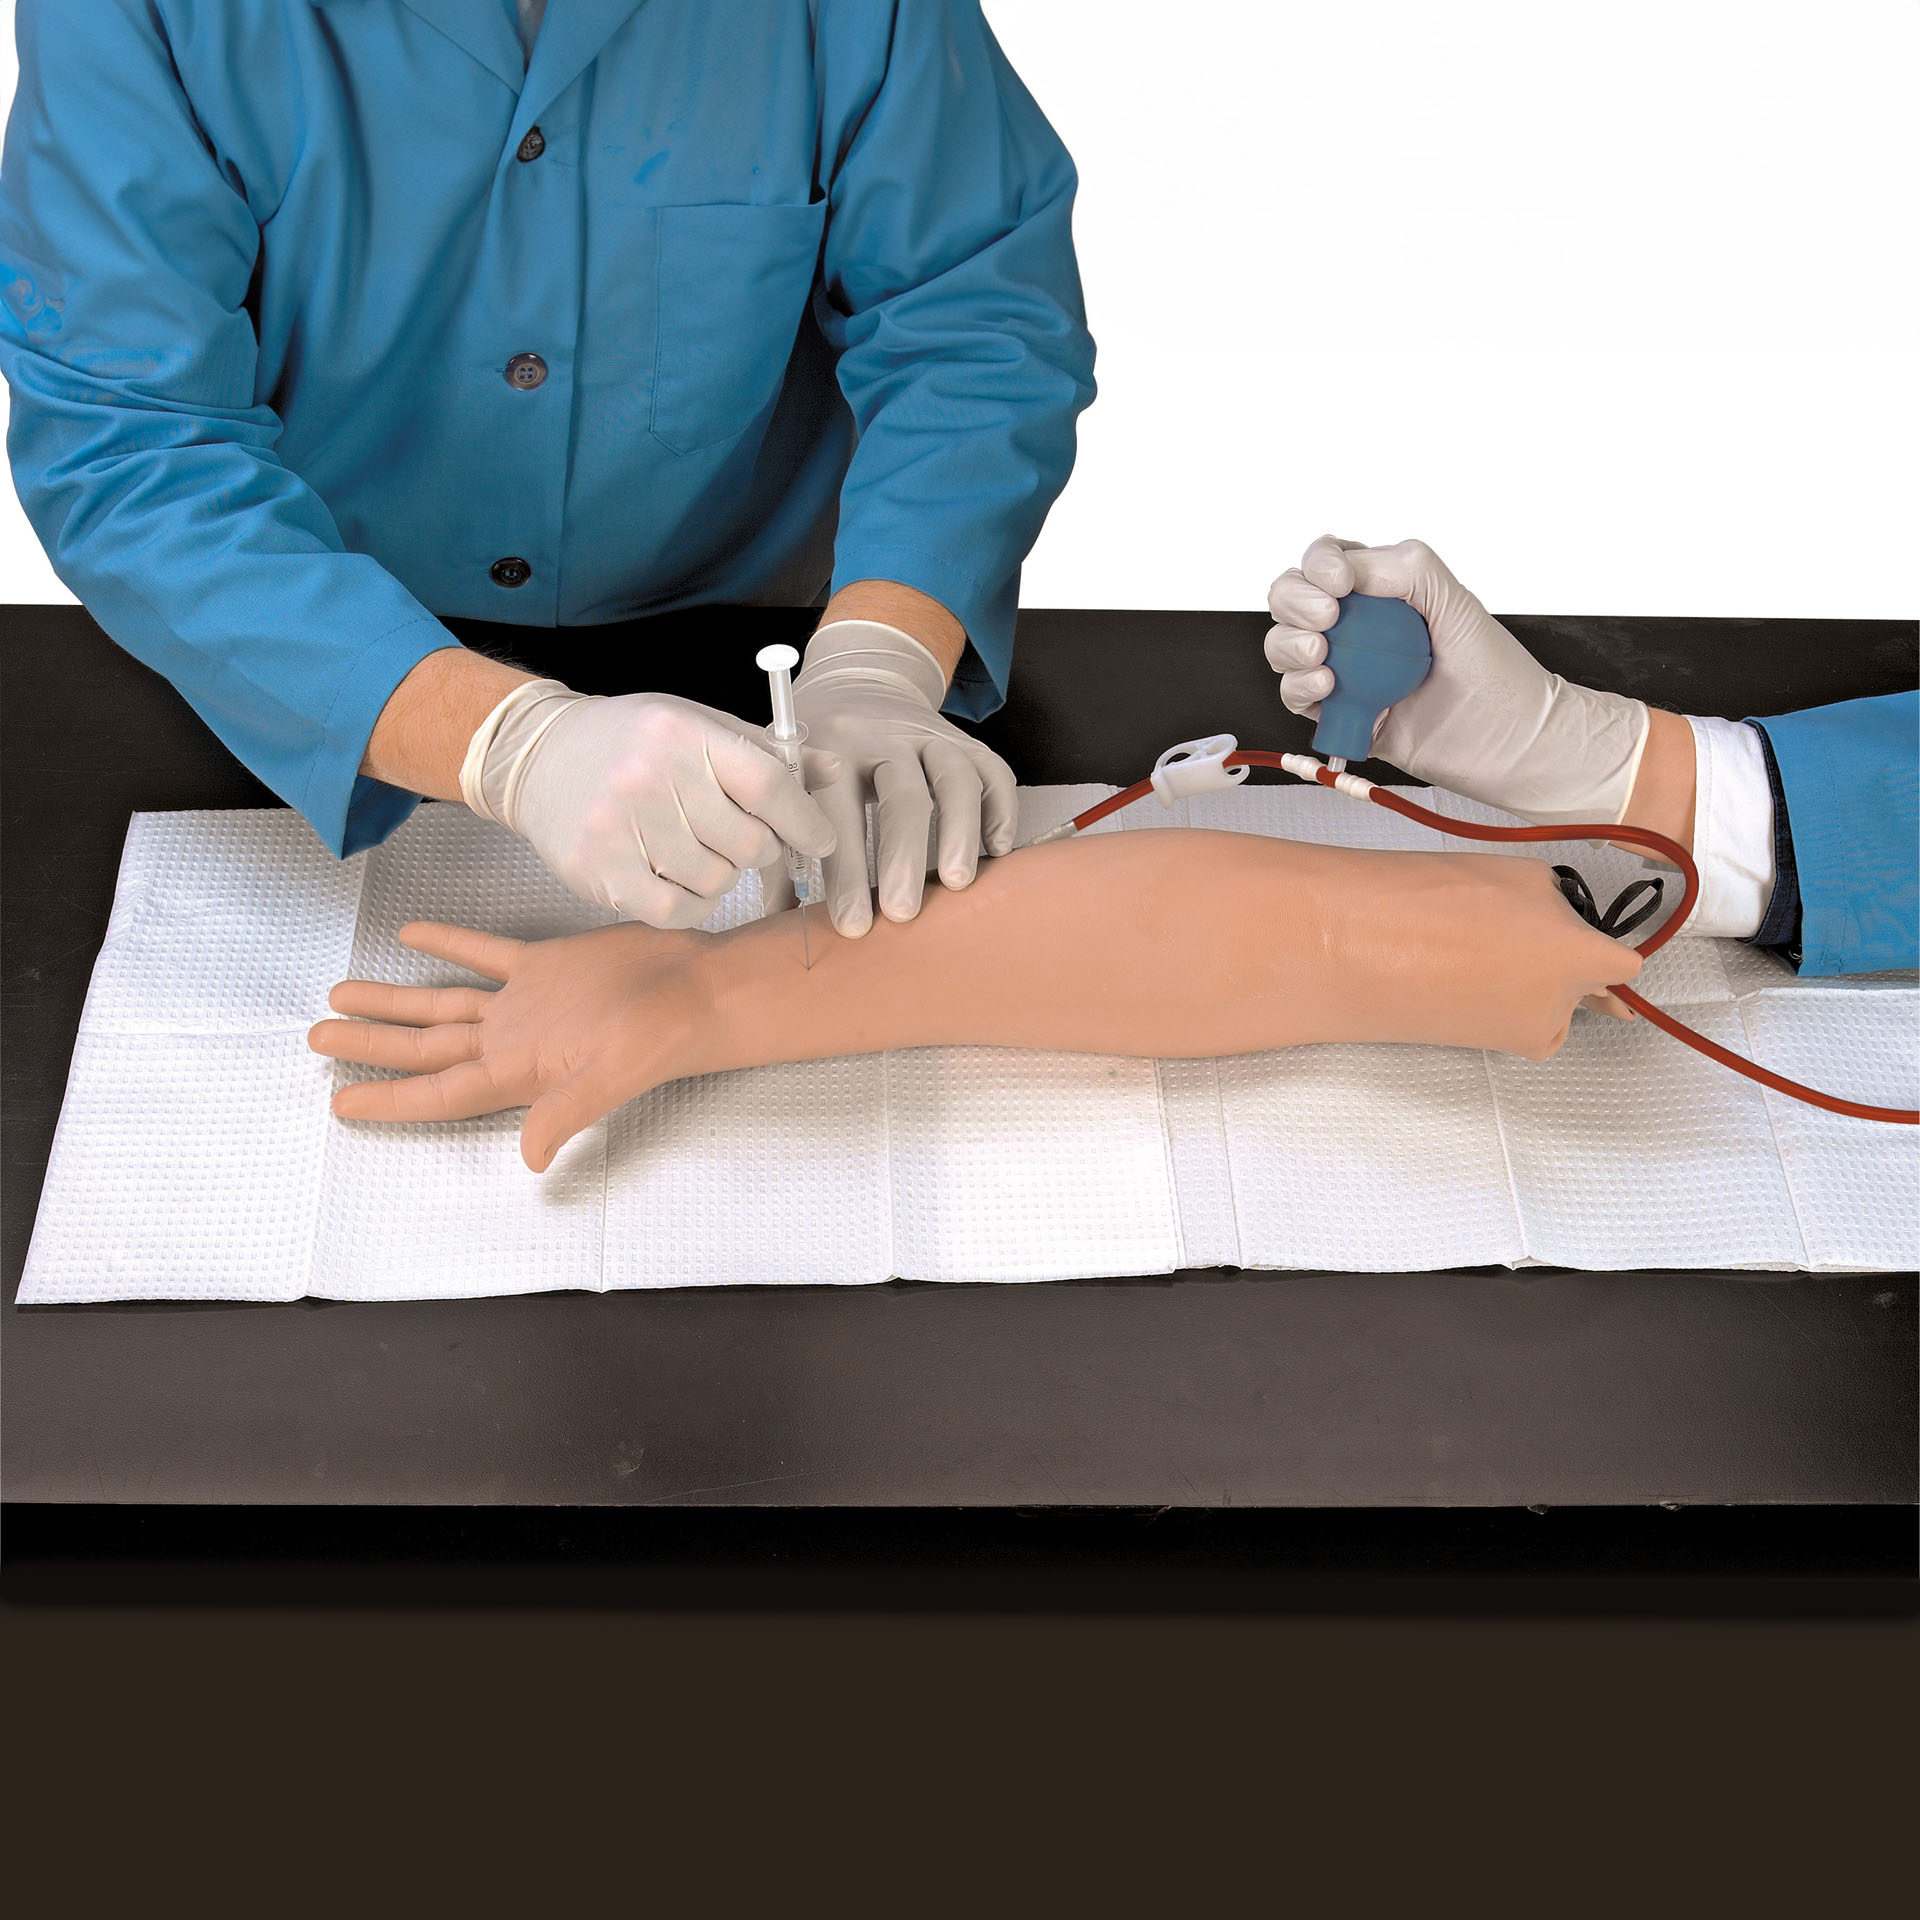 Arterial Puncture Arm Simulator